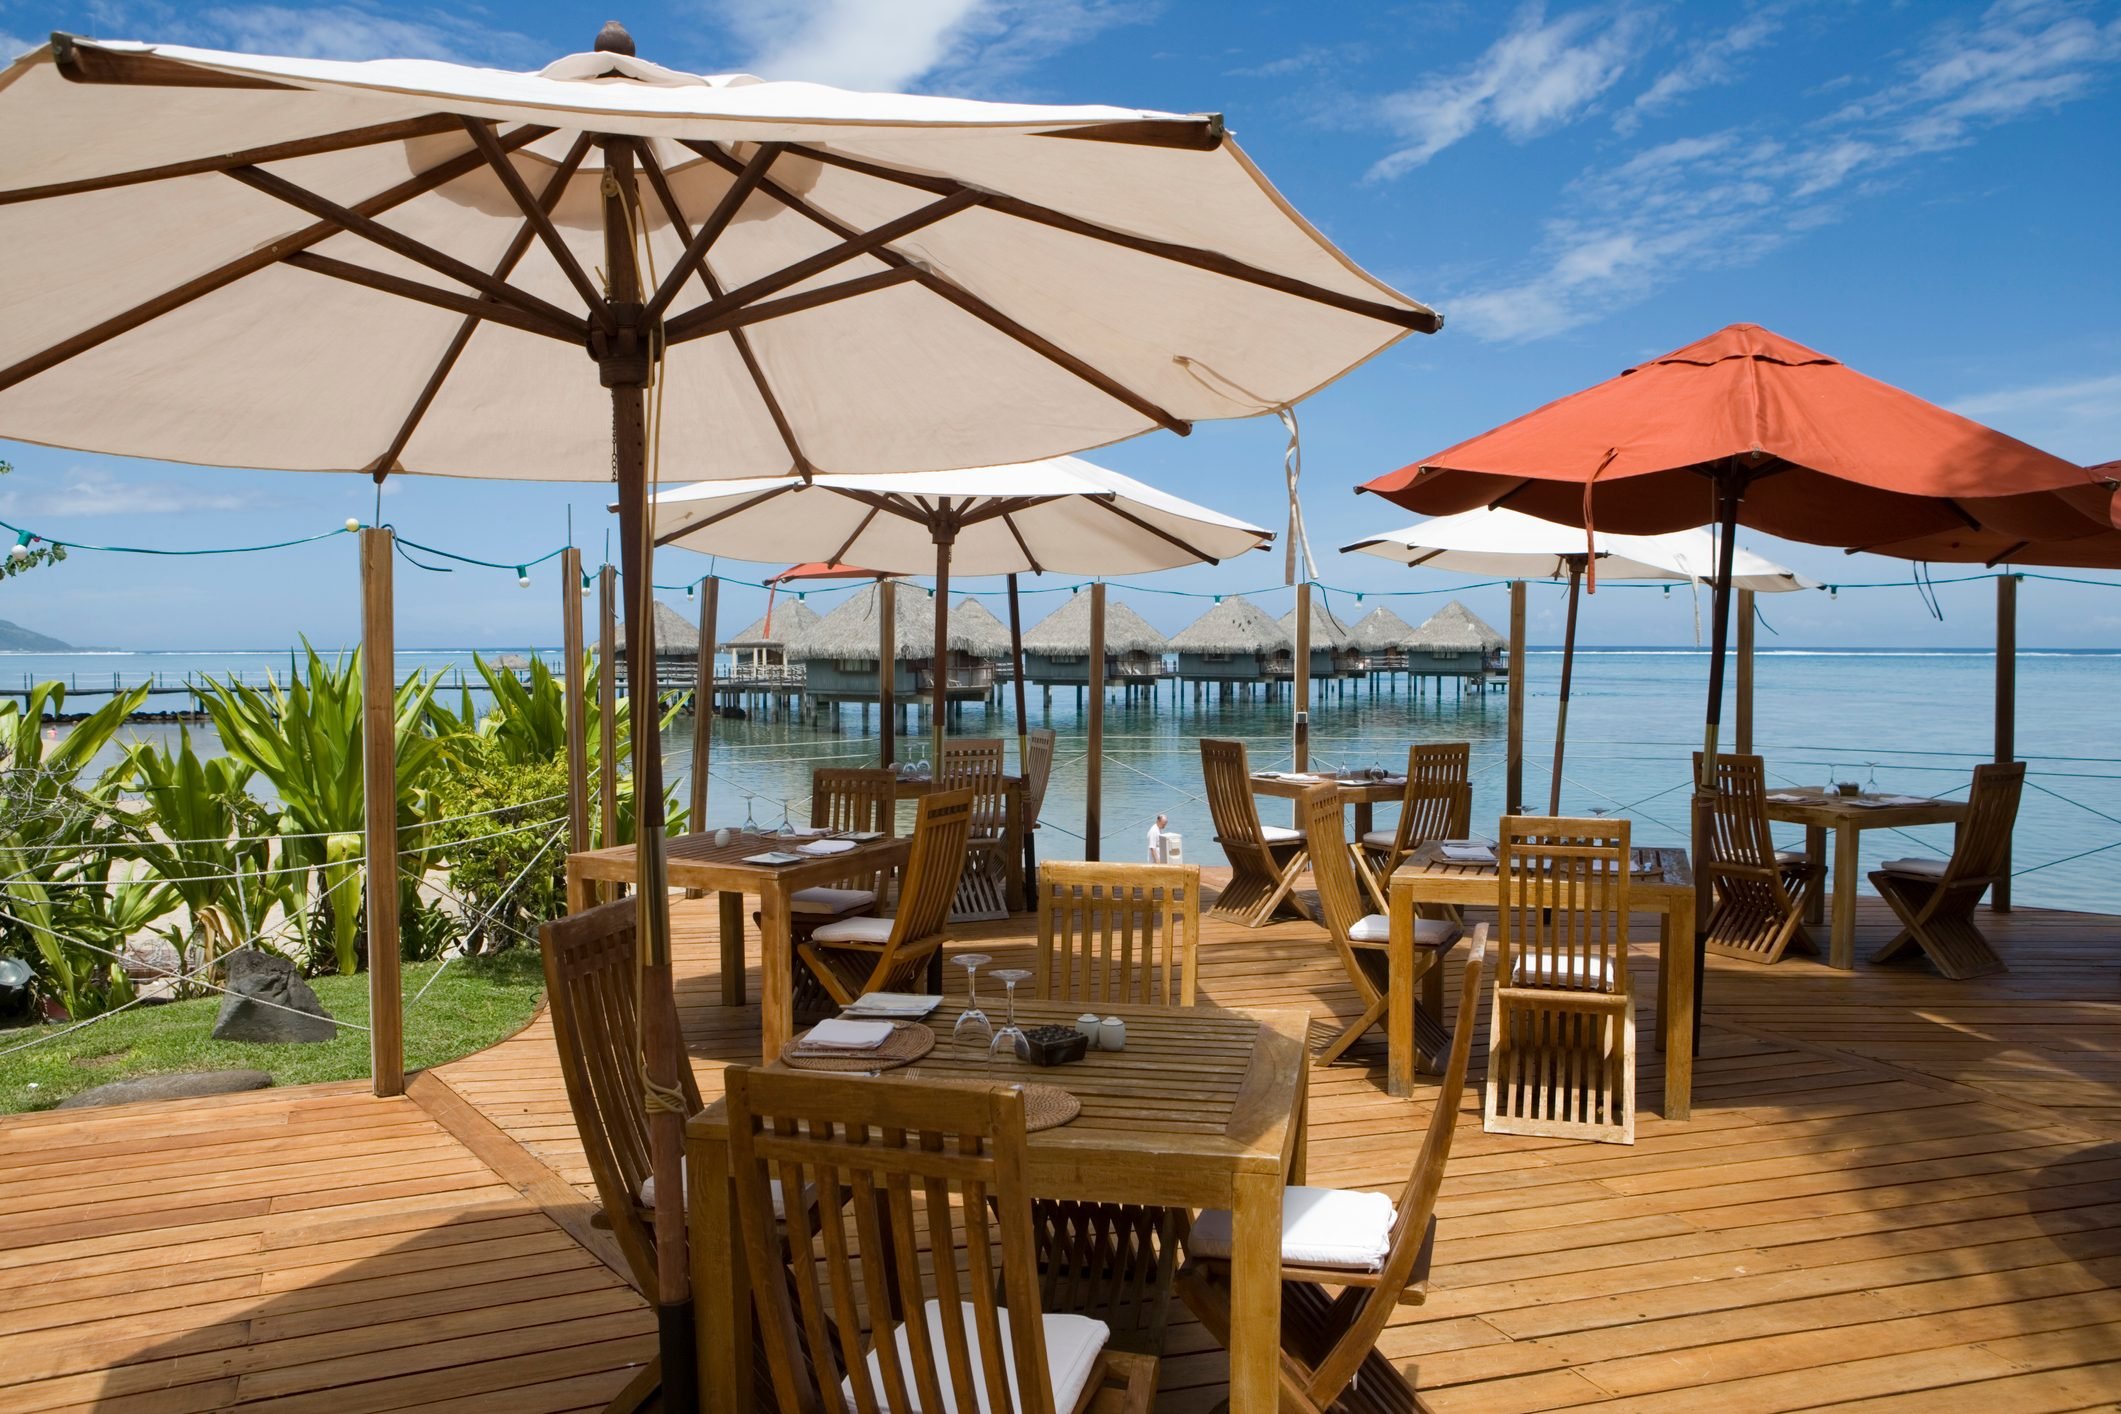 Restaurant at Le Meridien Tahiti Resort.